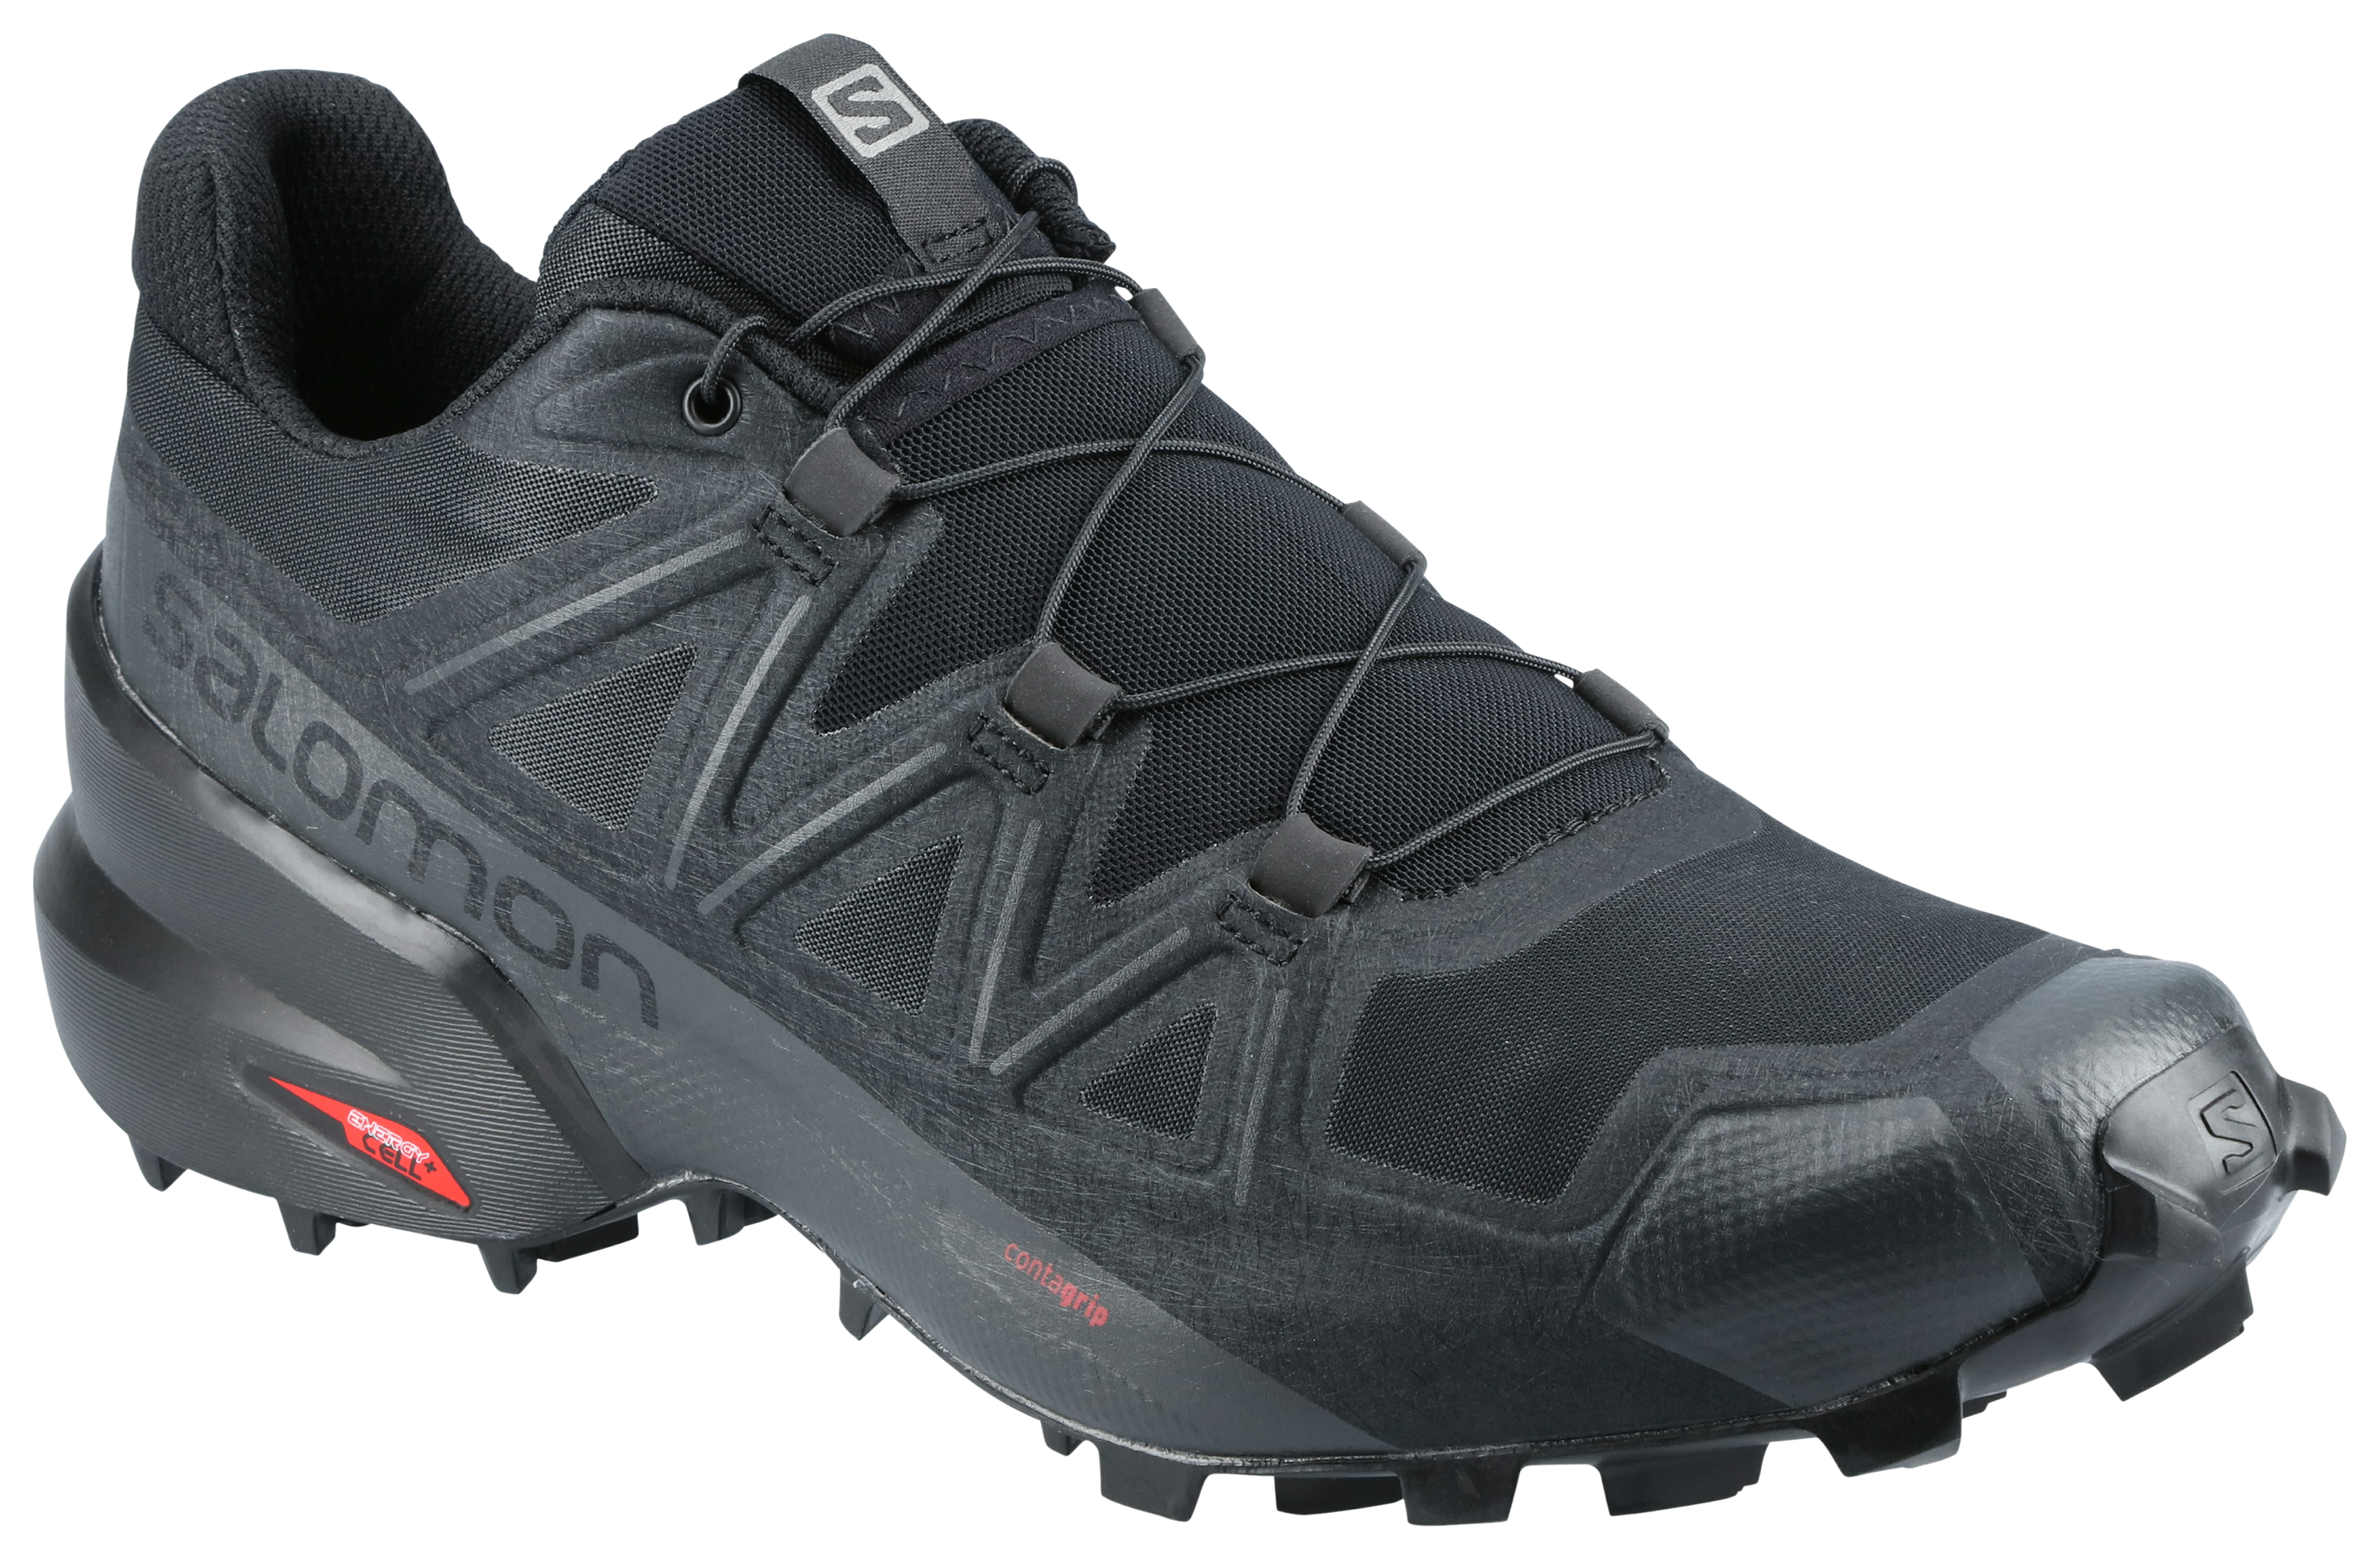 Salomon Speedcross 5 Trail Running Shoes for Men - Black/Black/Phantom - 8M